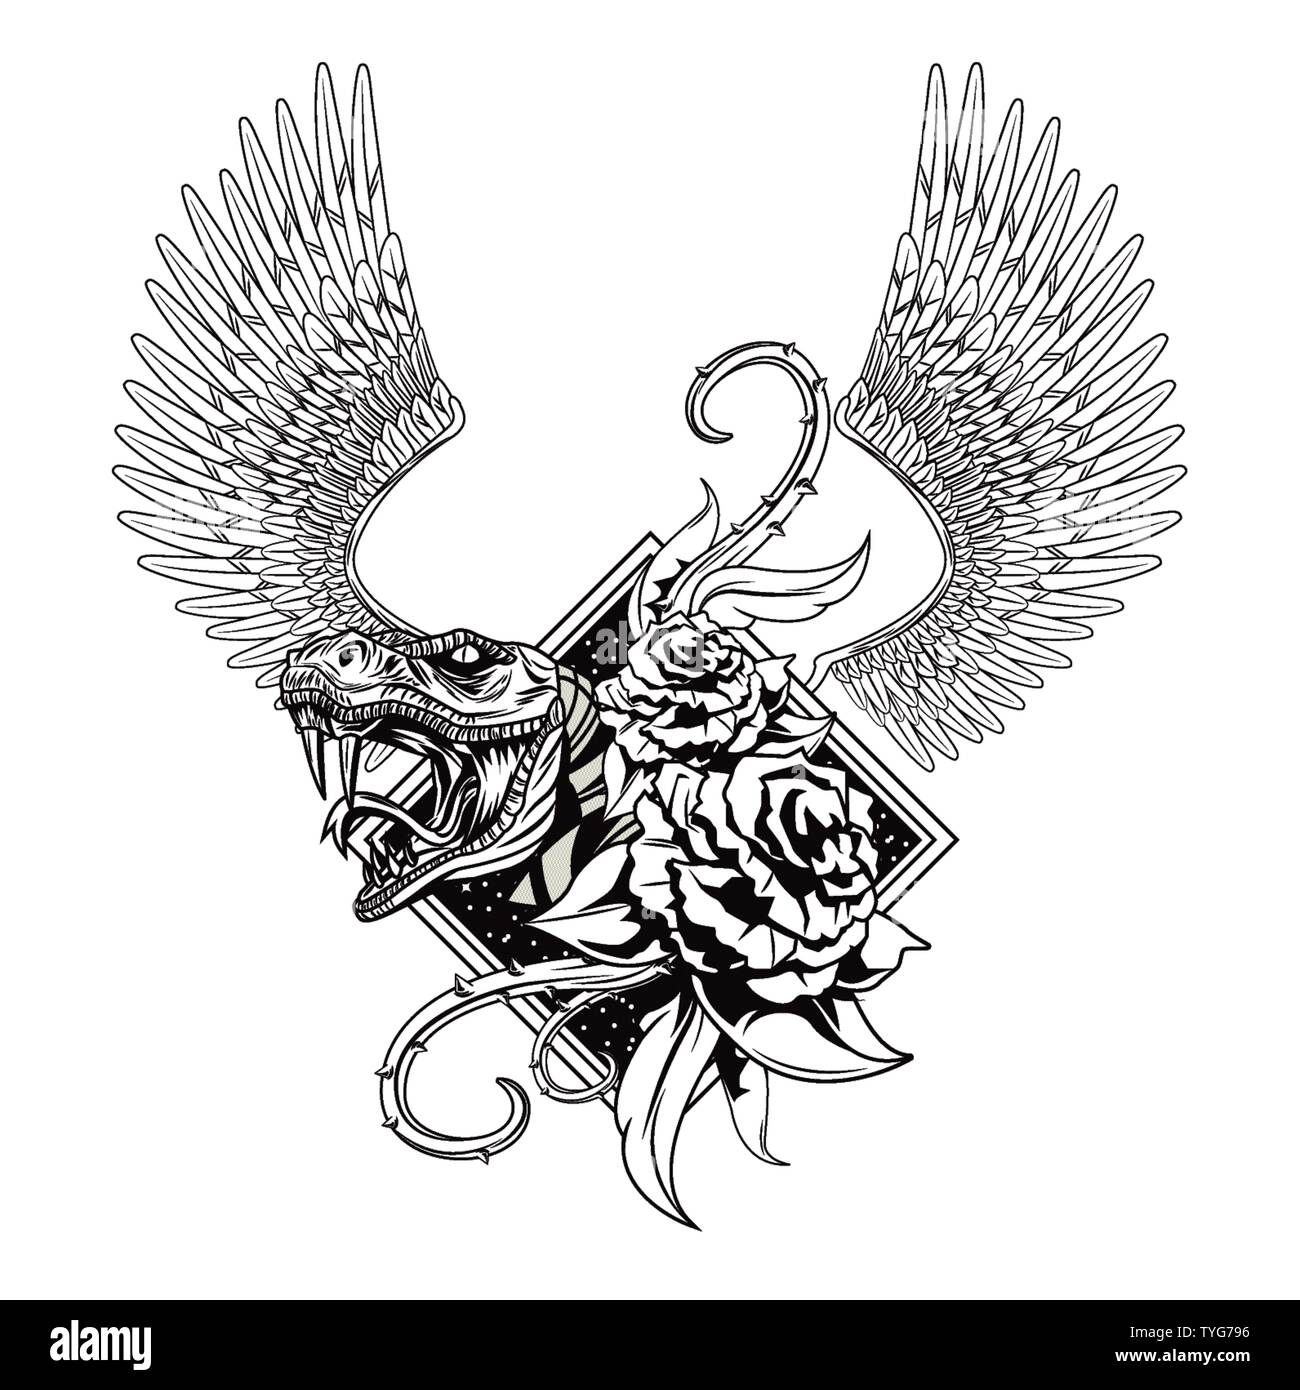 Schlange mit Rosen gezeichnet tattoo Symbol Stock-Vektorgrafik - Alamy